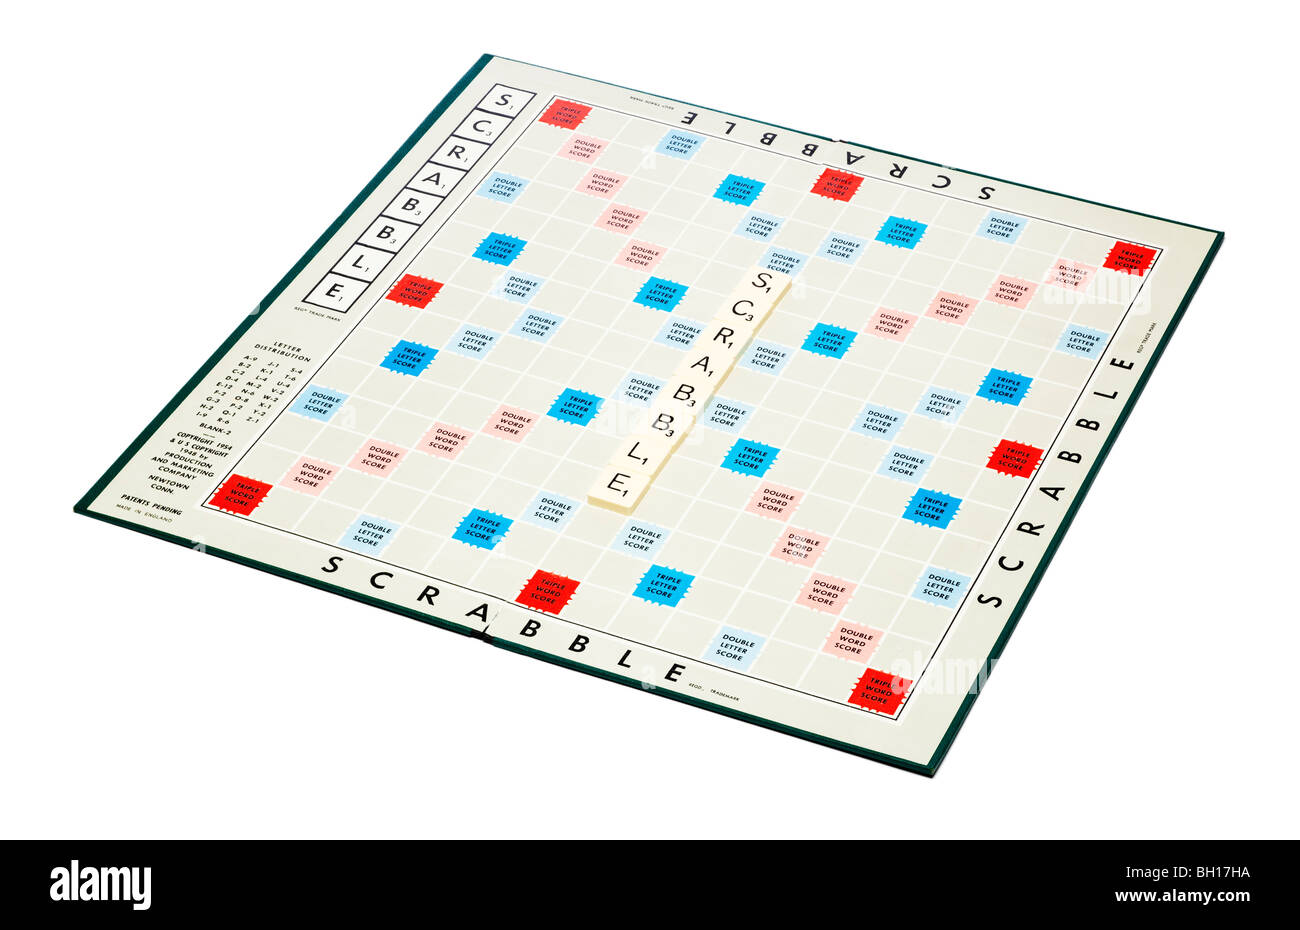 Junta Scrabble scrabble enunciadas, recortadas sobre fondo blanco. Foto de stock